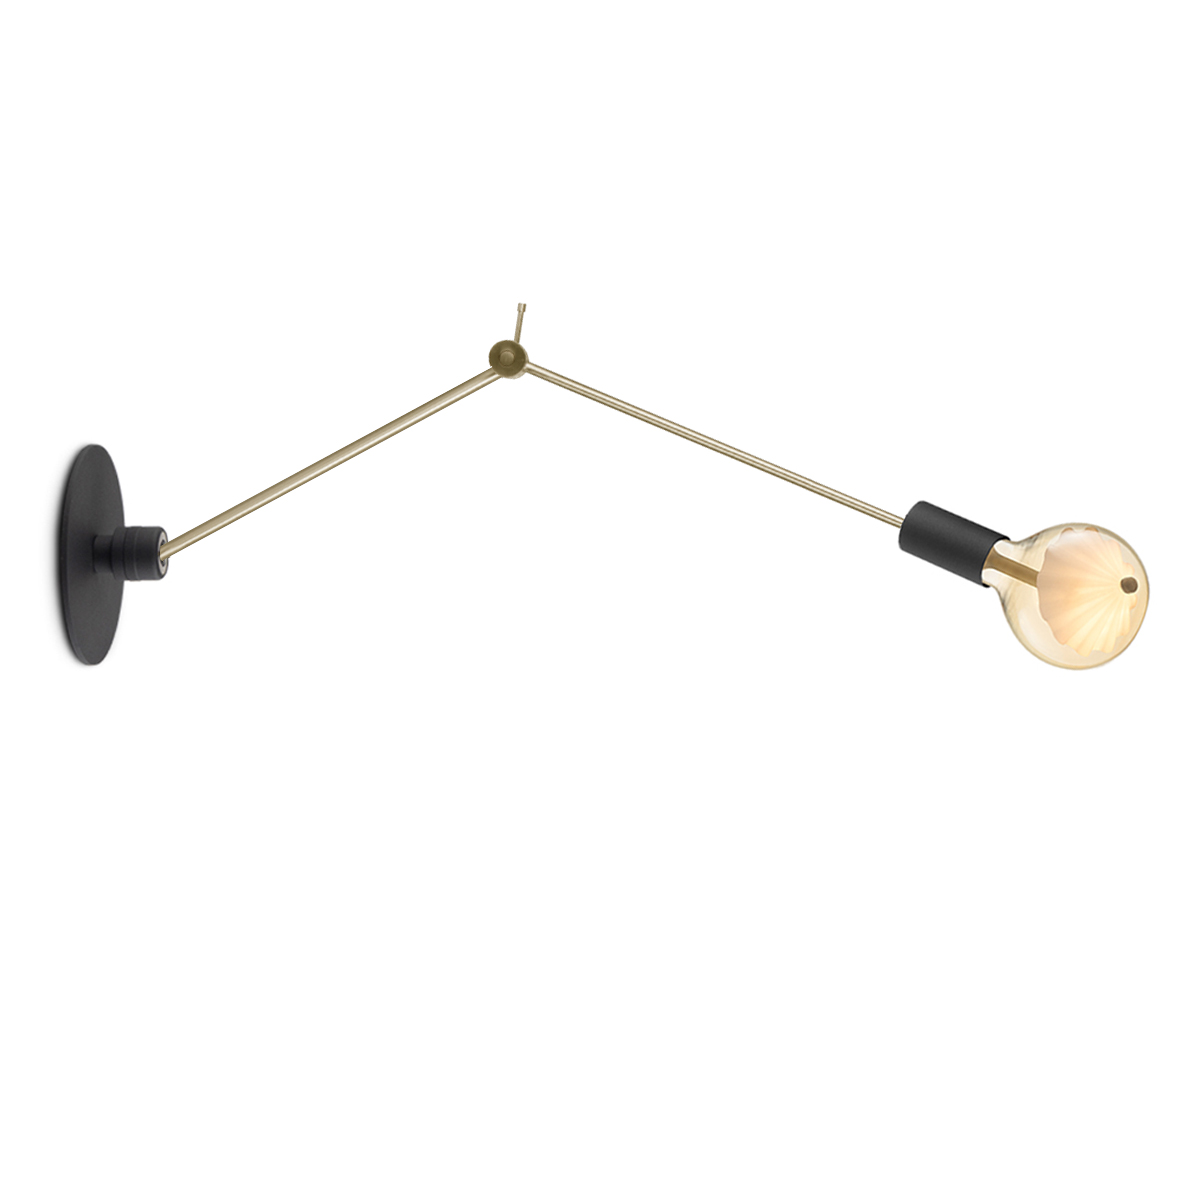 Tangla lighting - TLW7046-01BS - LED Wall lamp 1 Light - metal - sand black + brass - revolve - E27